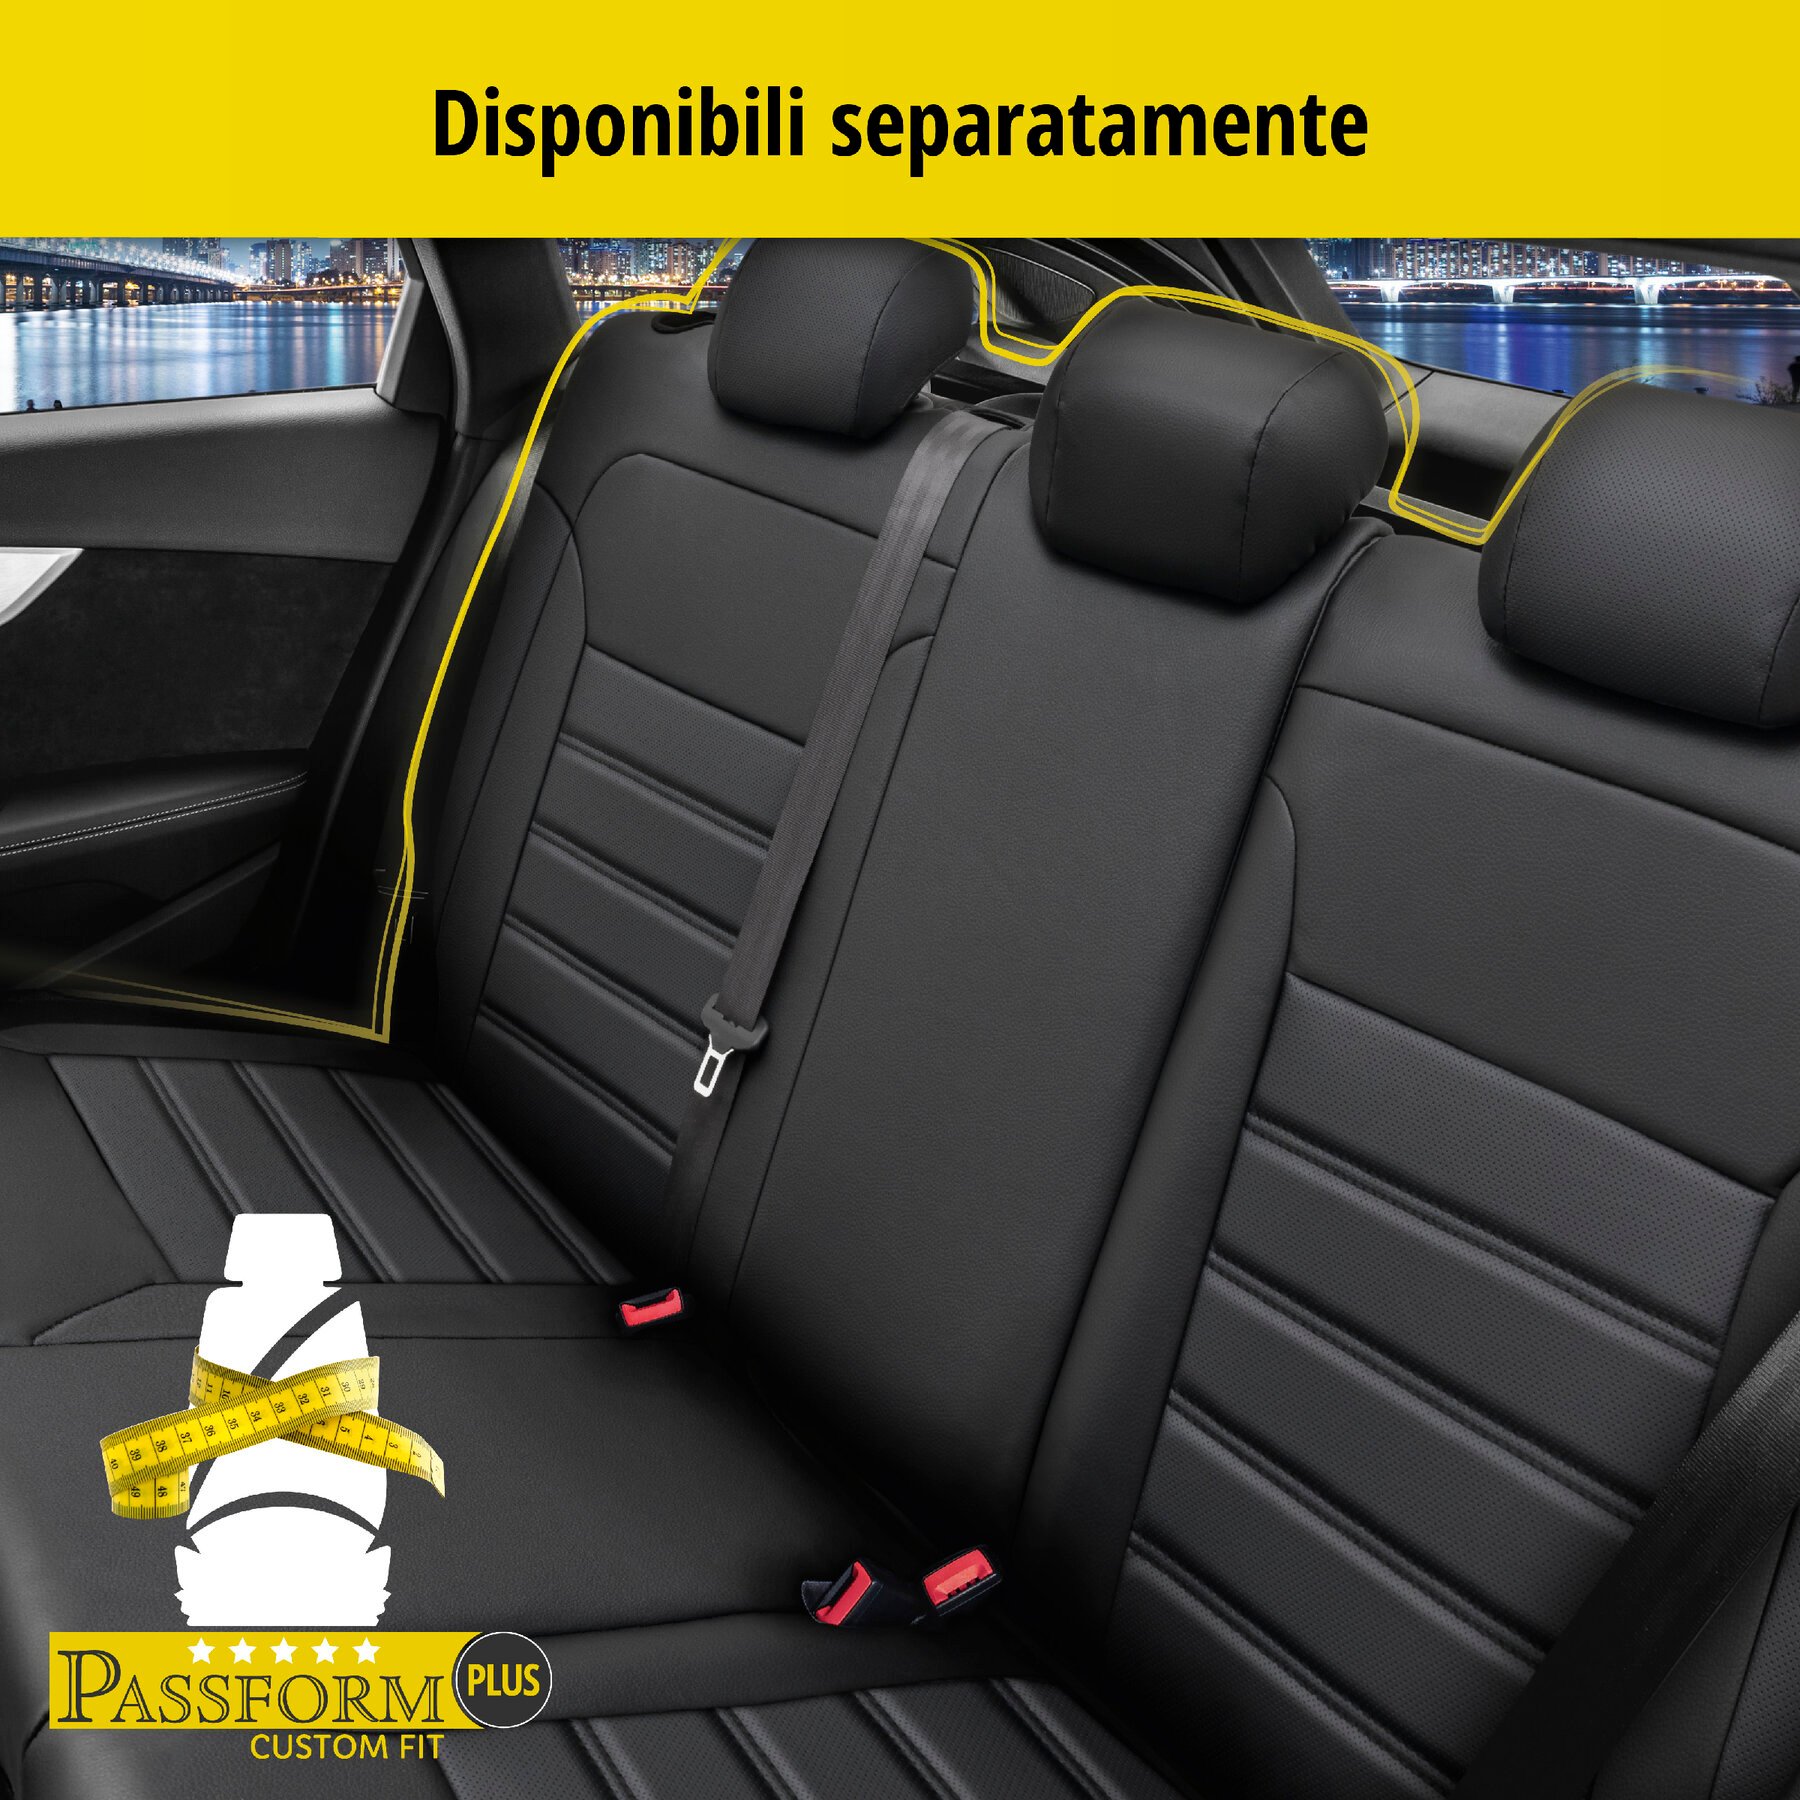 Coprisedili Robusto per Fiat 500X 09/2014-Oggi, 2 coprisedili singoli per sedili normali